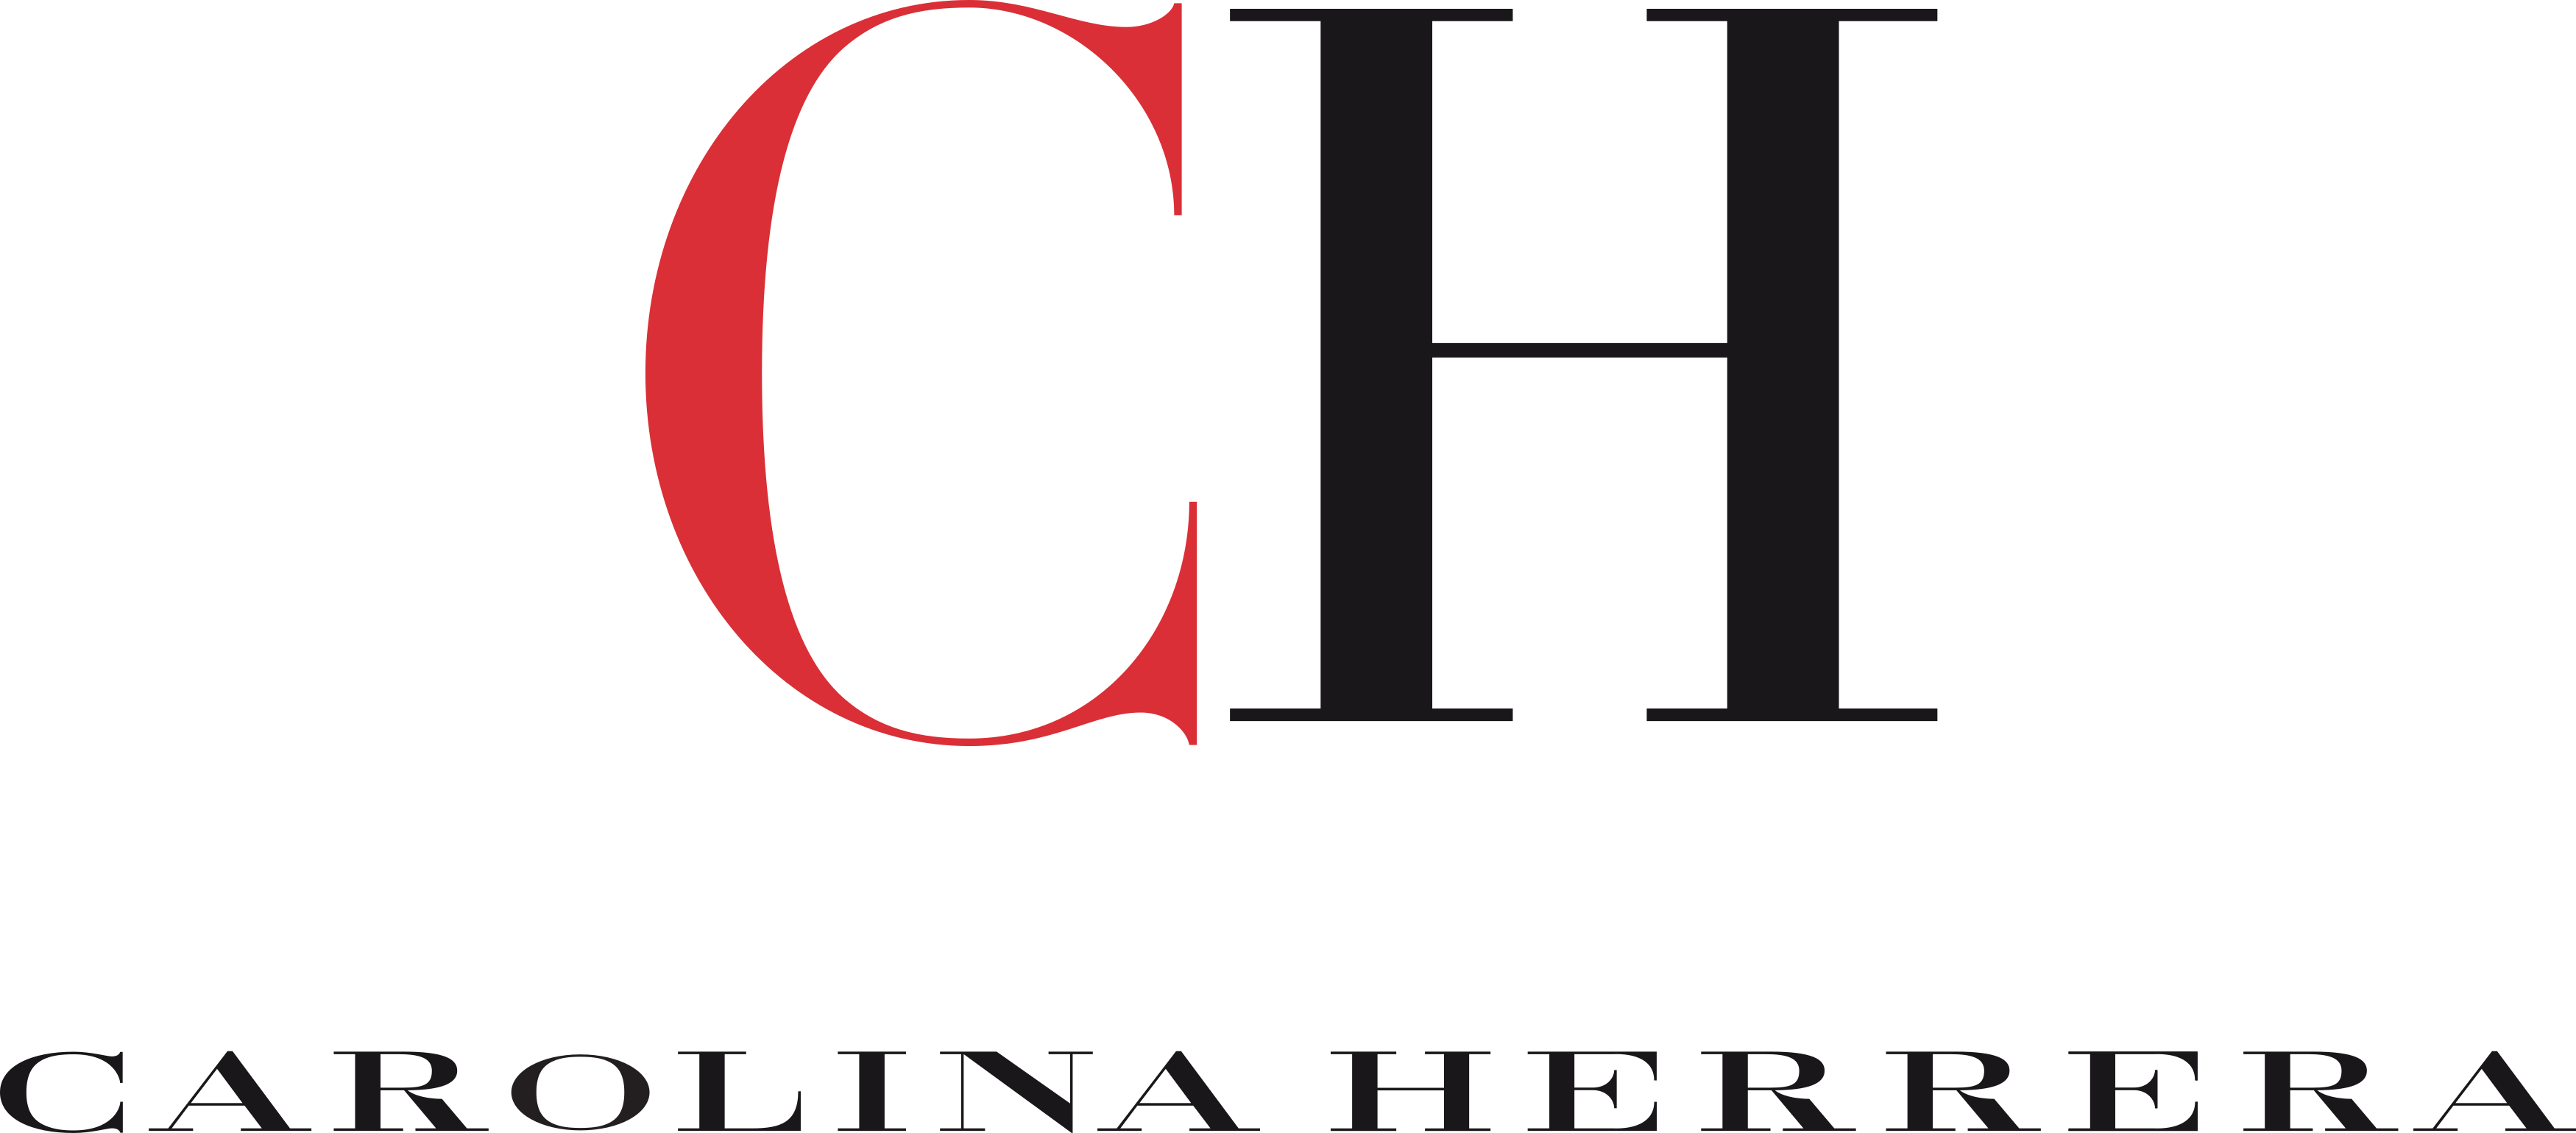 carolina herrera logo - Carolina Herrera Logo